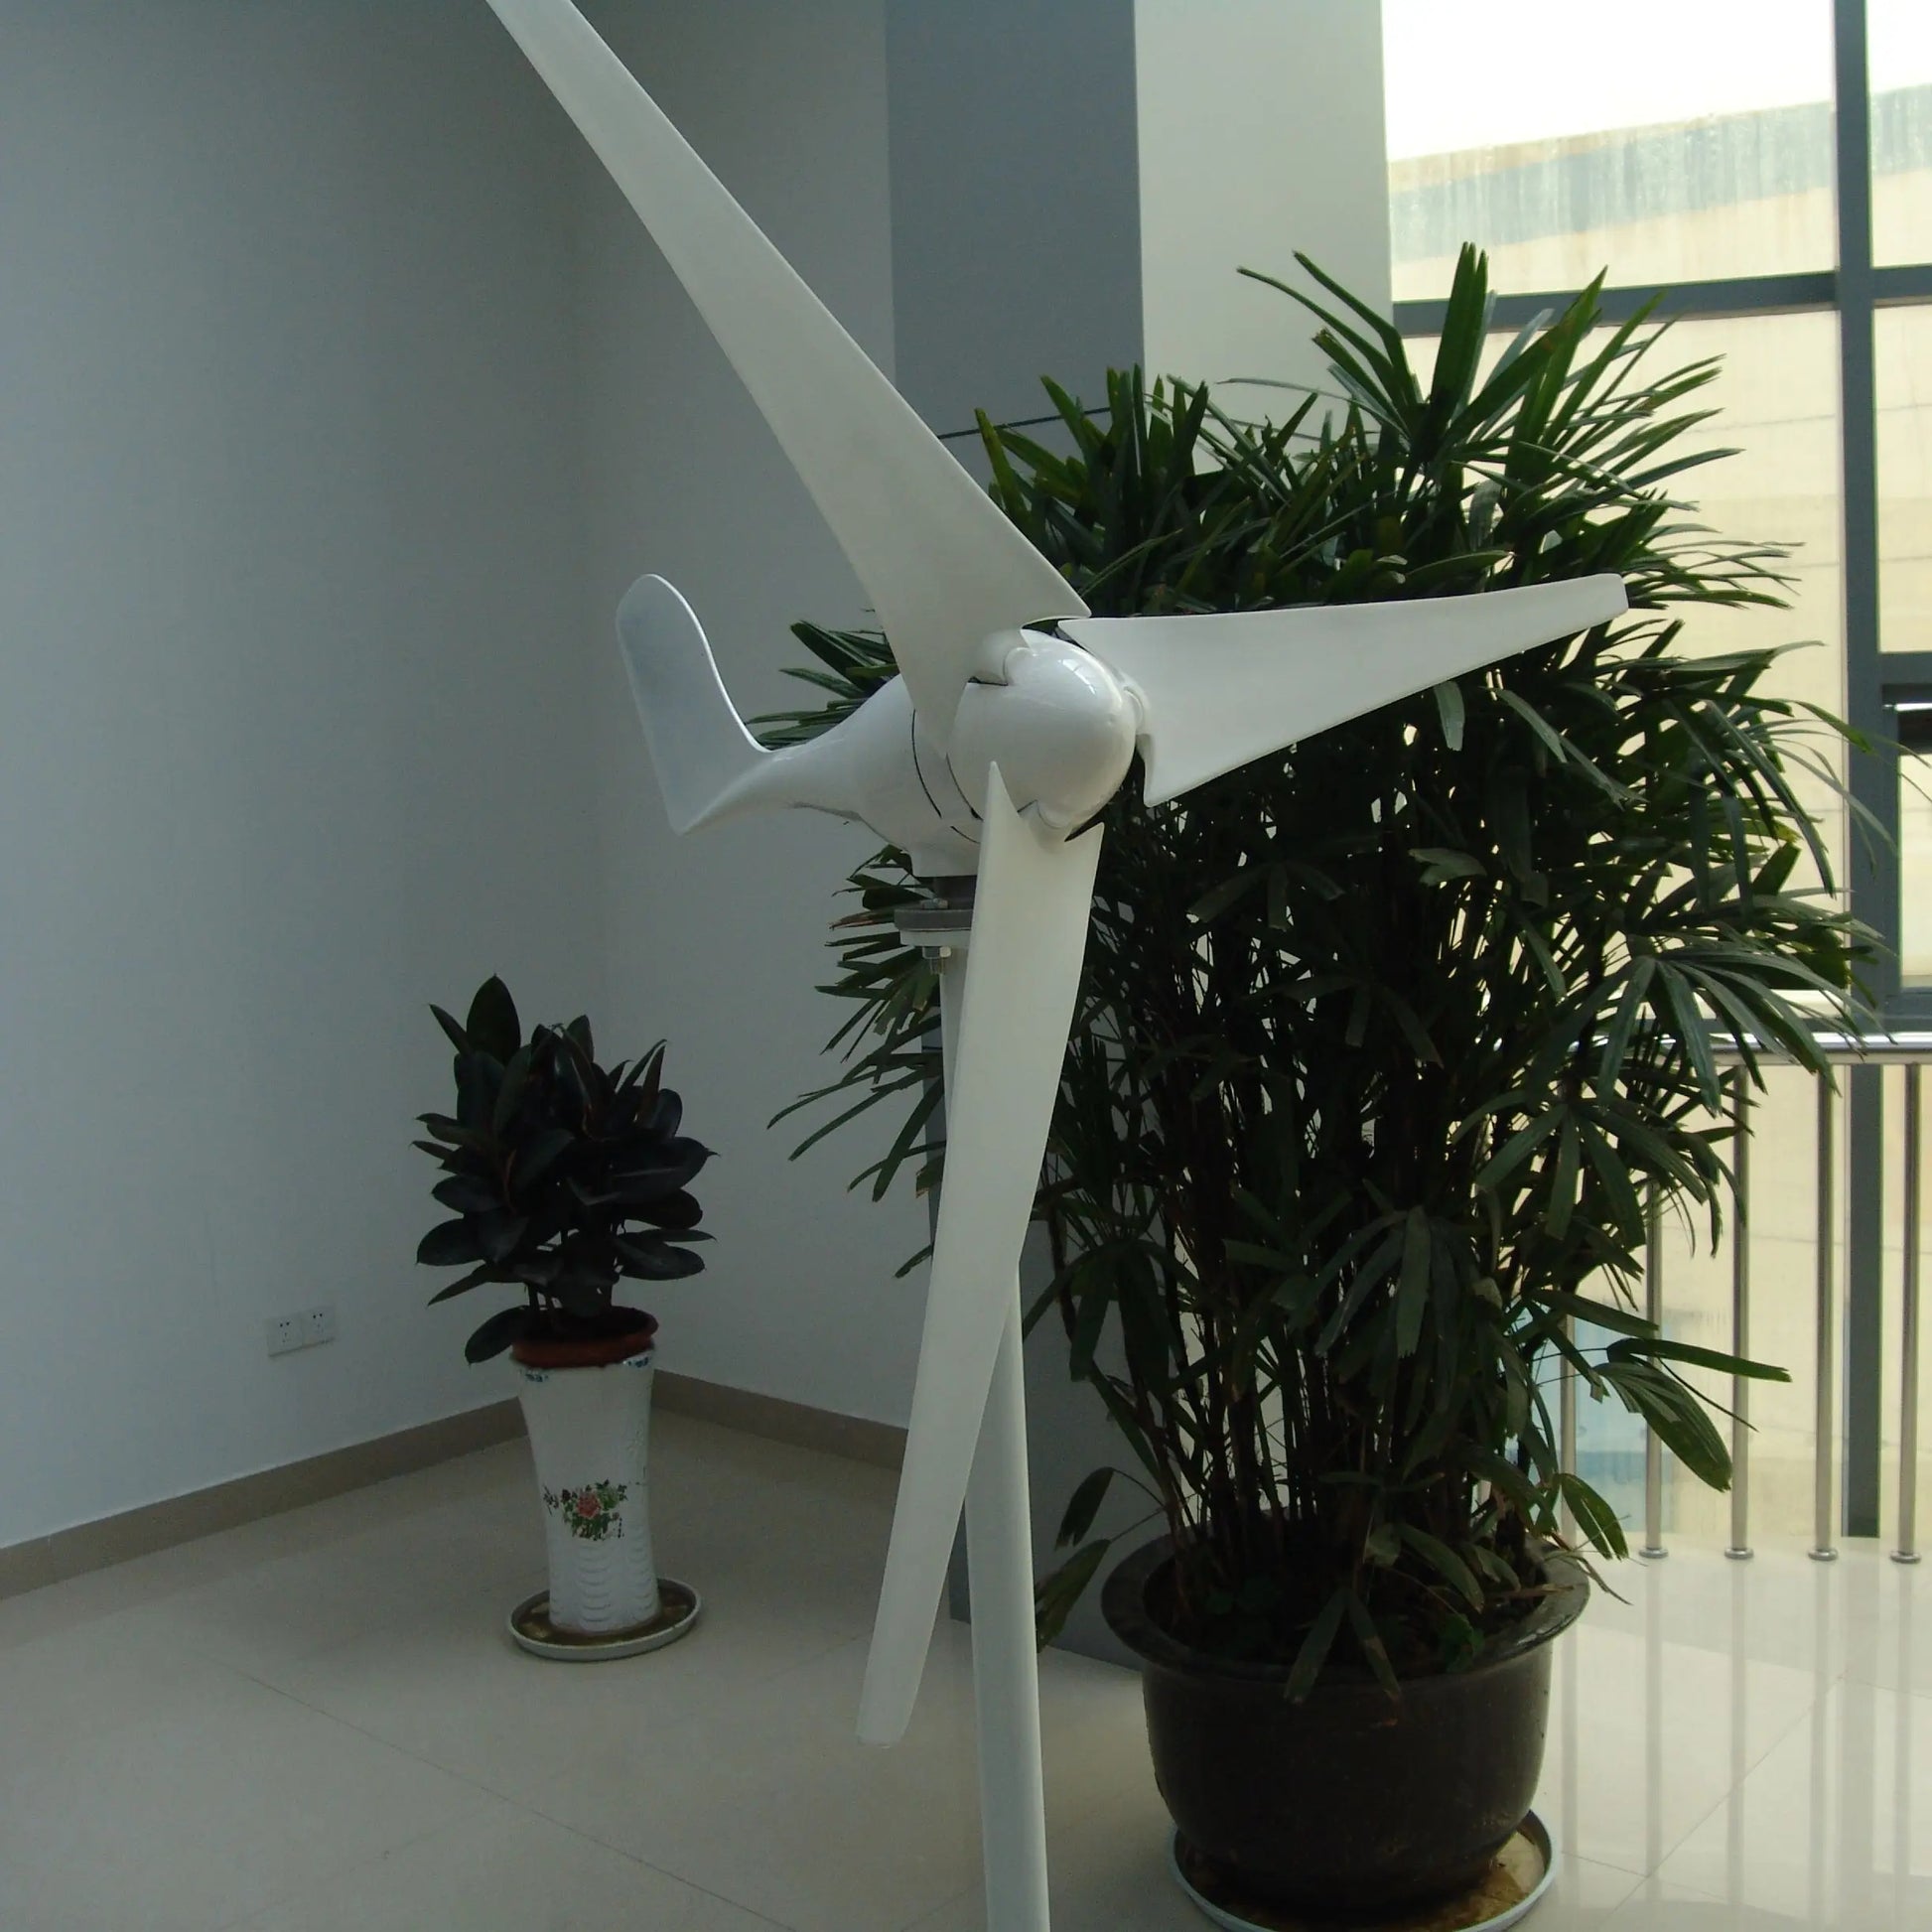 Wind Turbine Wind mill 300w 400w small wind generator12V 14V waterproof controller - 54 Energy - Renewable Energy Store